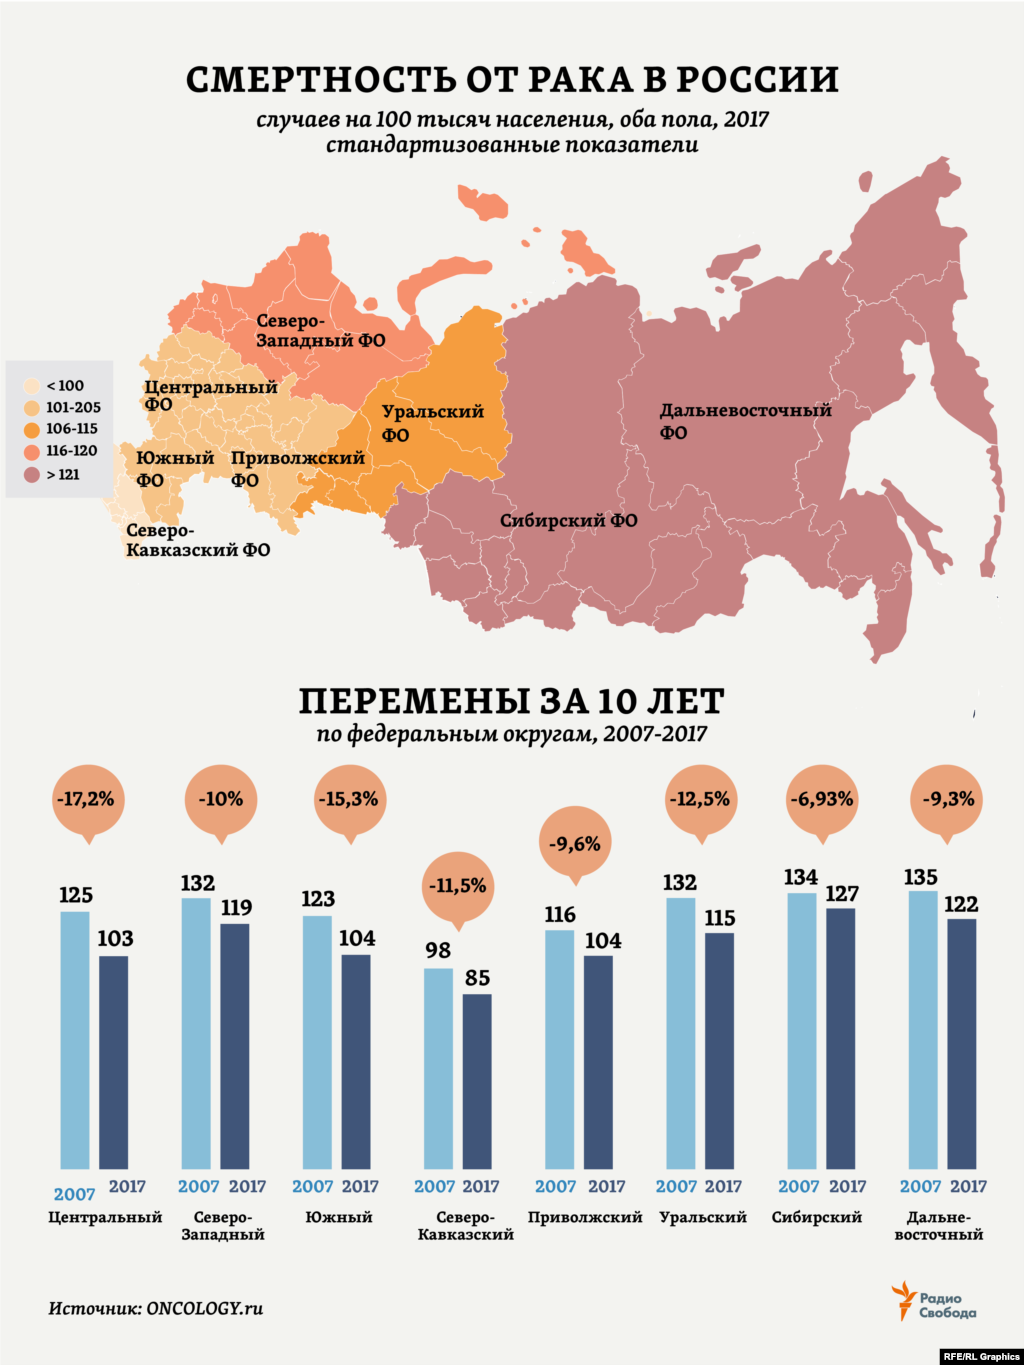 От злокачественных новообразований в 2017 году в России скончались 290 тысяч 662 человека (15,9% всех умерших в стране в течение года; из них 53,6% - мужчины). Это на 1,7% меньше, чем годом ранее, но на те же 1,7% больше, чем 10 лет назад, в 2007-ом. Эксперты отмечают, что в общей структуре смертности в России удельный вес случаев злокачественных новообразований составил для мужского населения 17,1%, для женского населения &ndash; 14,7%. &nbsp;